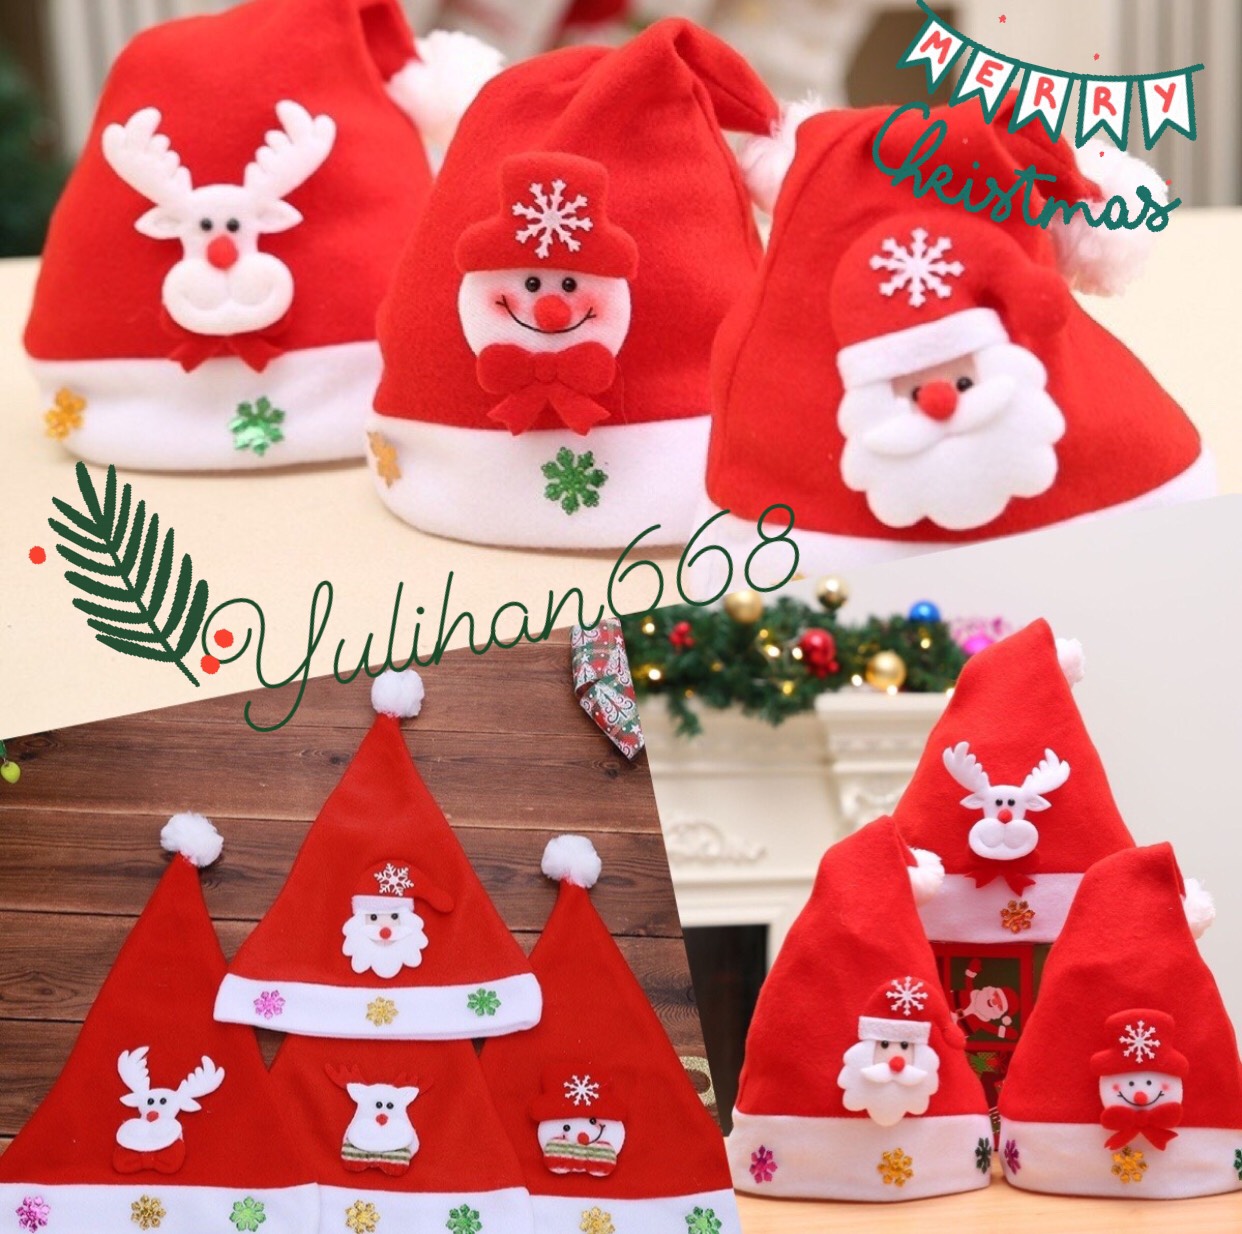 หมวกคริสมาส ?หมวกซานต้าครอสมีไฟ หมวกวันคริสมาสต์น่ารัก หมวกปีใหม่ หมวกซานต้าสีแดง??